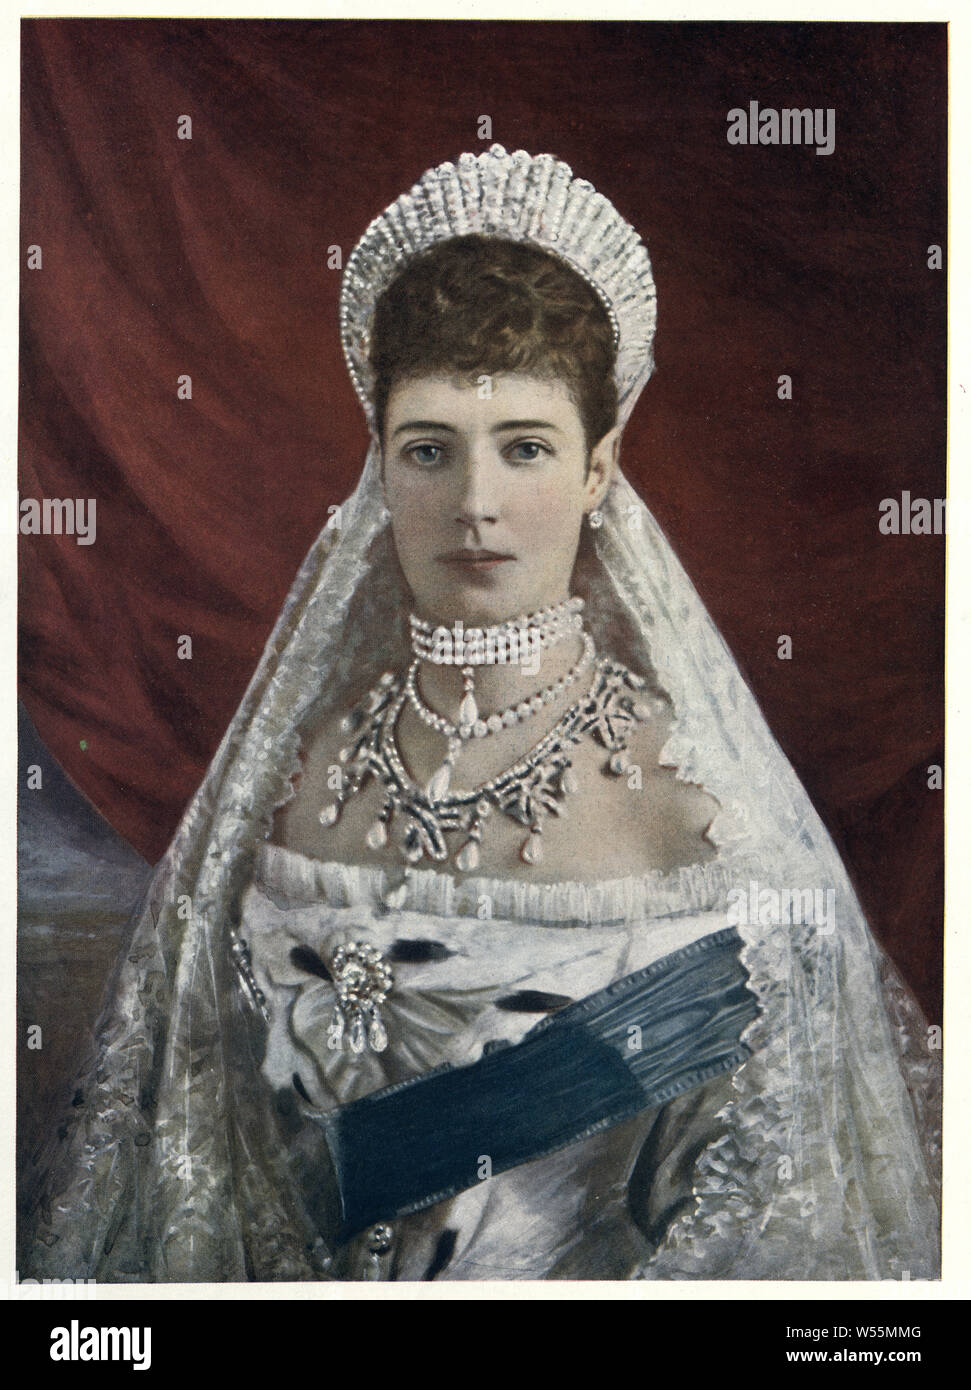 Maria Feodorovna (26 de noviembre de 1847 - 13 de octubre de 1928), conocida antes de su matrimonio como princesa Dagmar de Dinamarca, era una princesa danesa y la emperatriz de Rusia como esposa del emperador Alejandro III Foto de stock